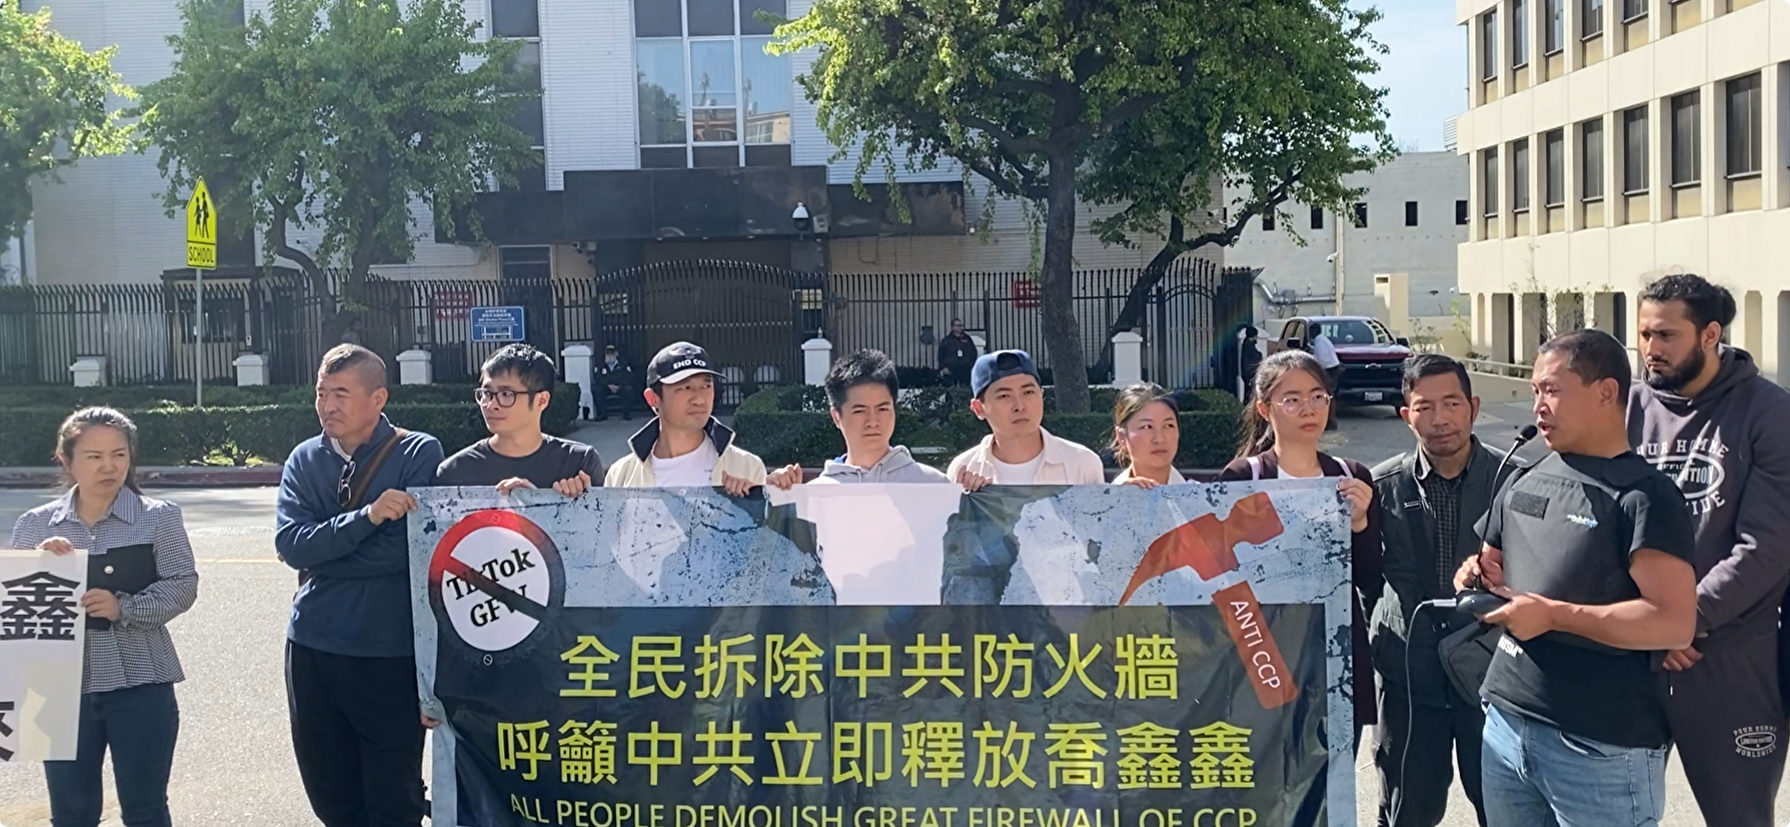 拆墙运动一周年 洛杉矶华人集会吁全民拆墙